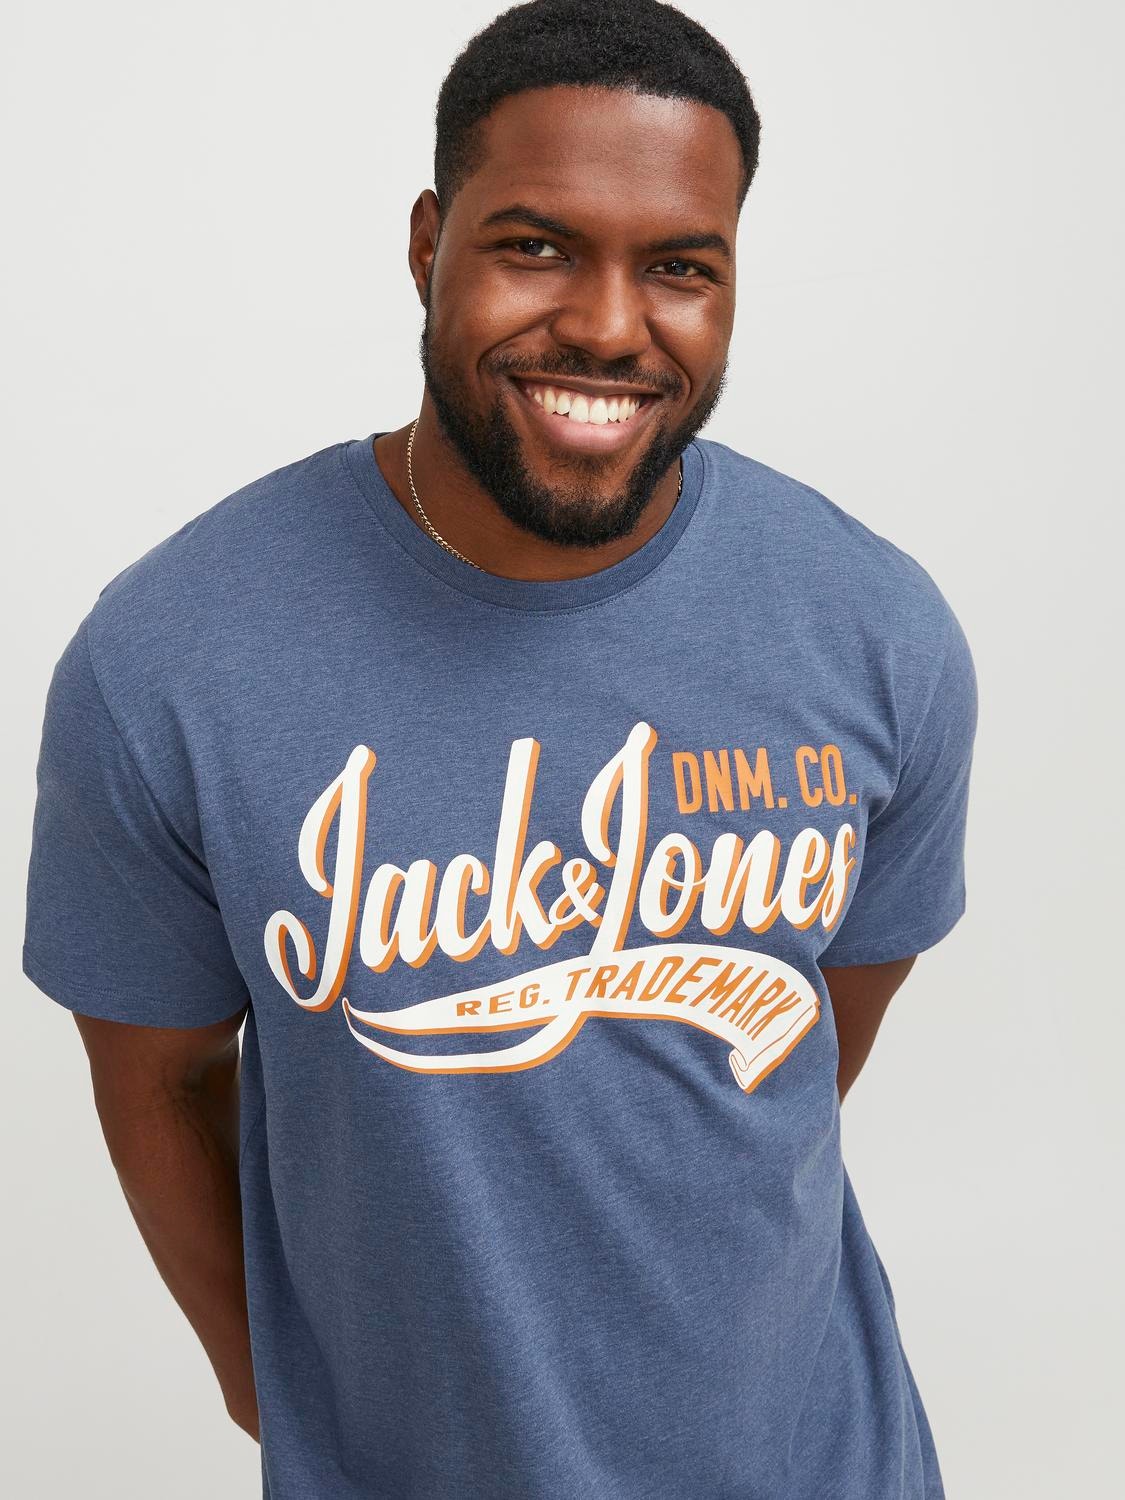 Jack & Jones Plus Size T-shirt Con logo -Ensign Blue - 12243611